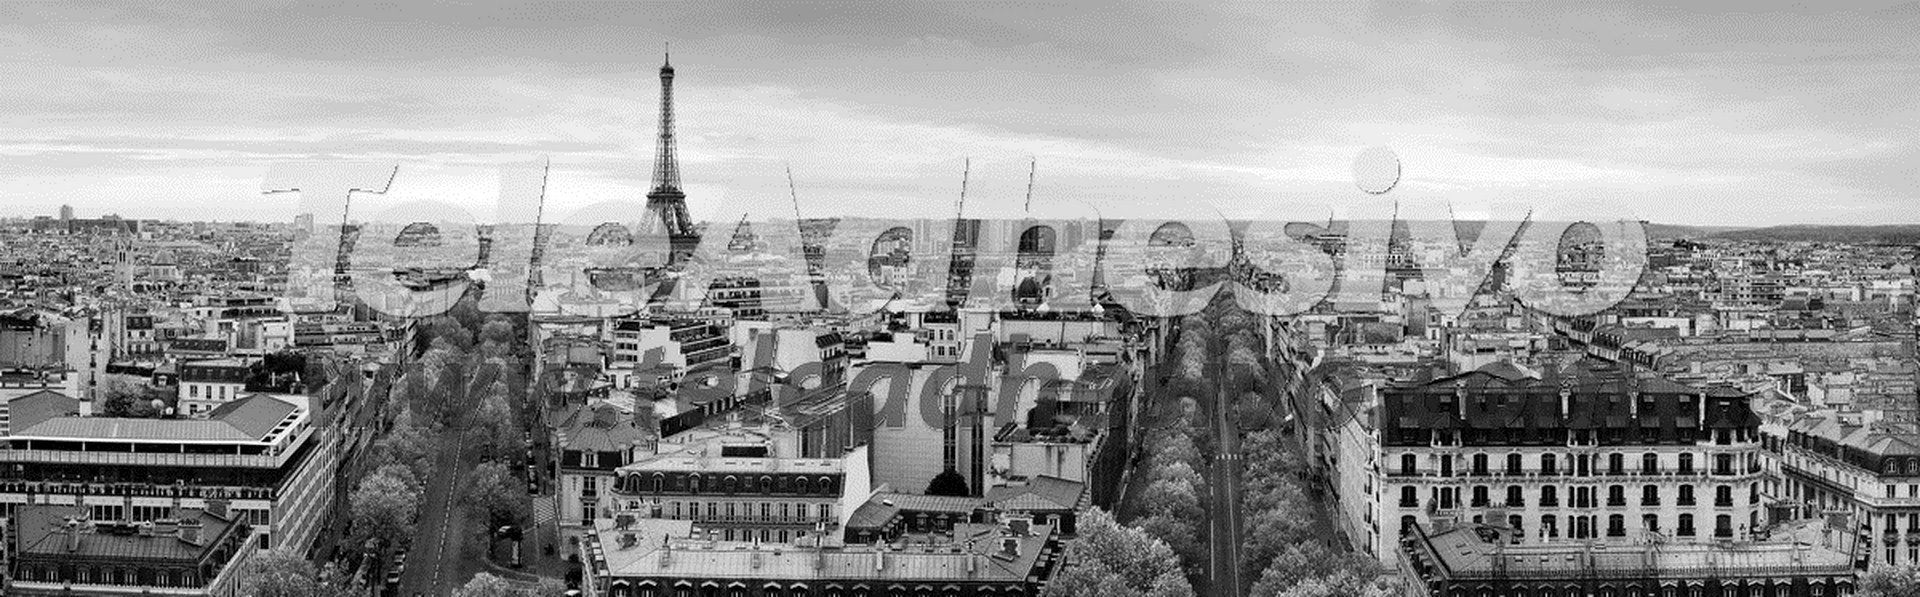 Fotomurales: Panorámica de París en blanco y negro